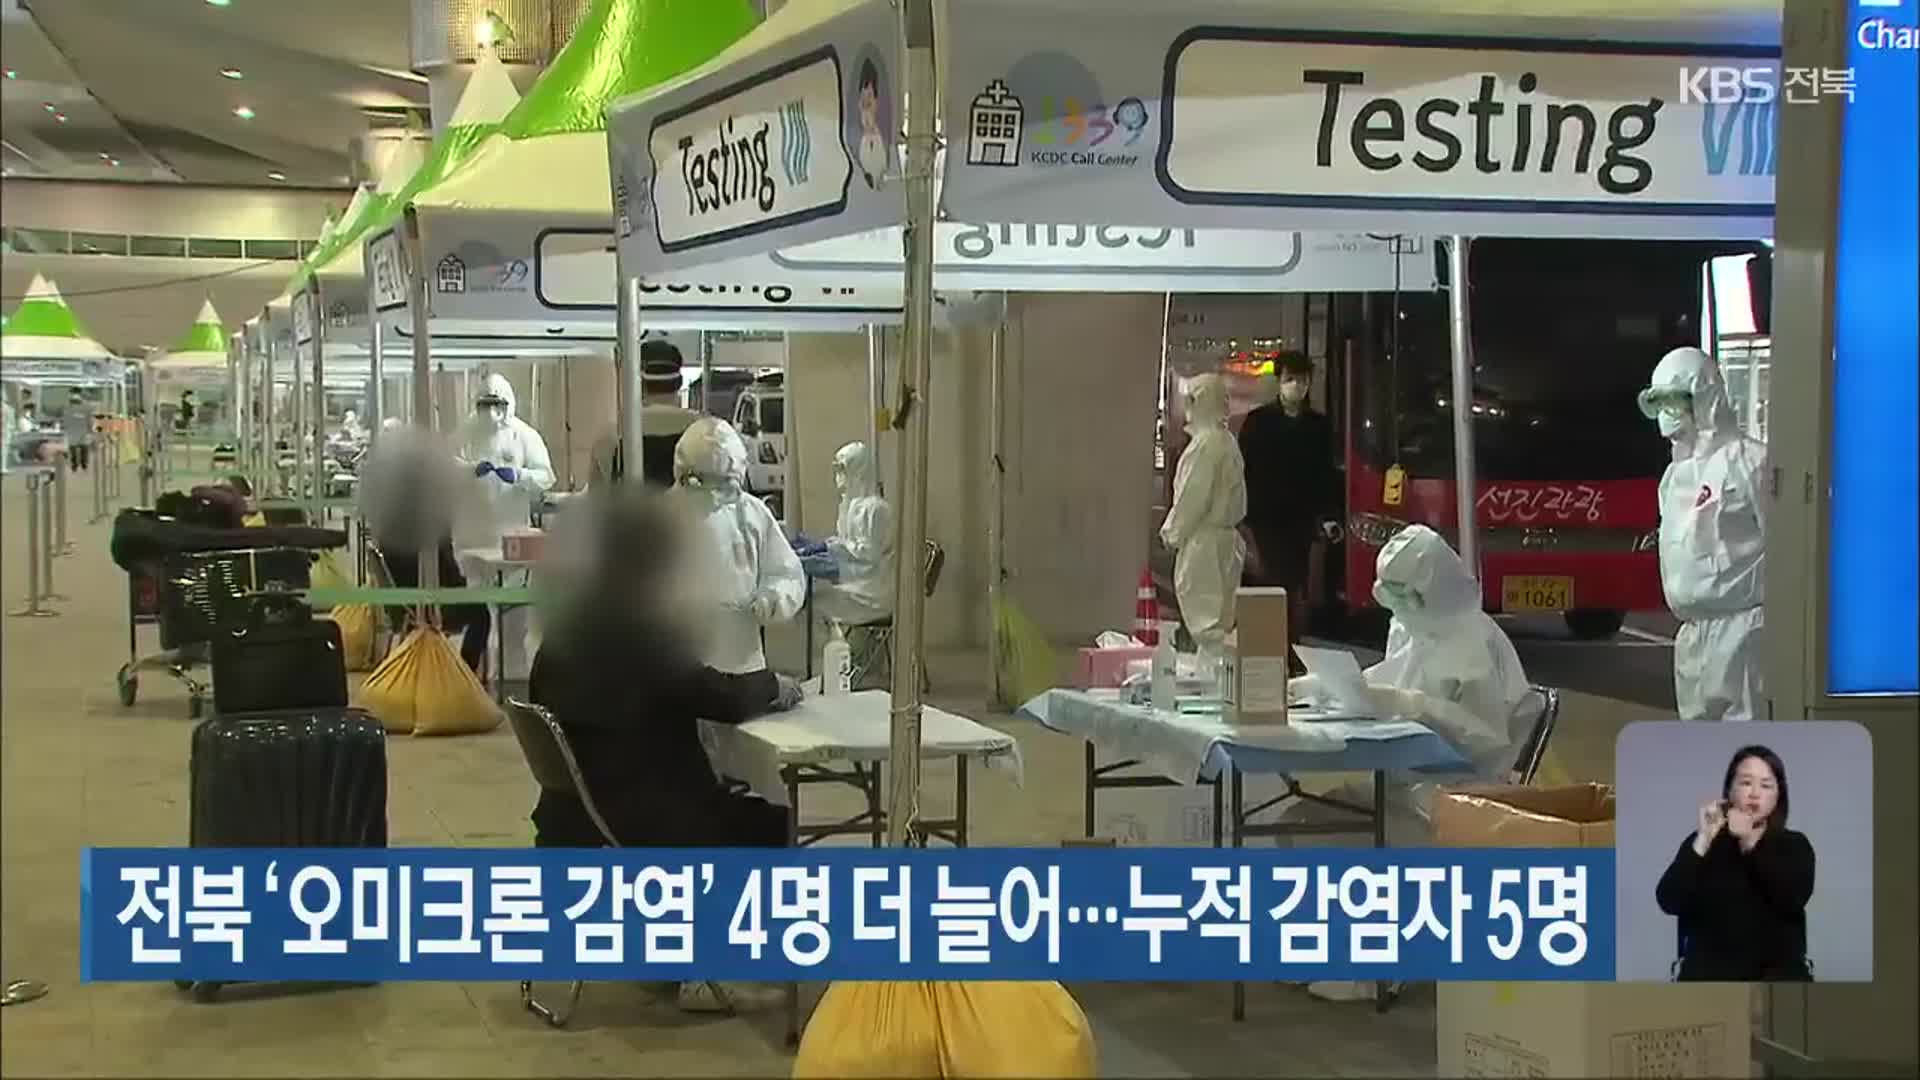 전북 ‘오미크론 감염’ 4명 더 늘어…누적 감염자 5명